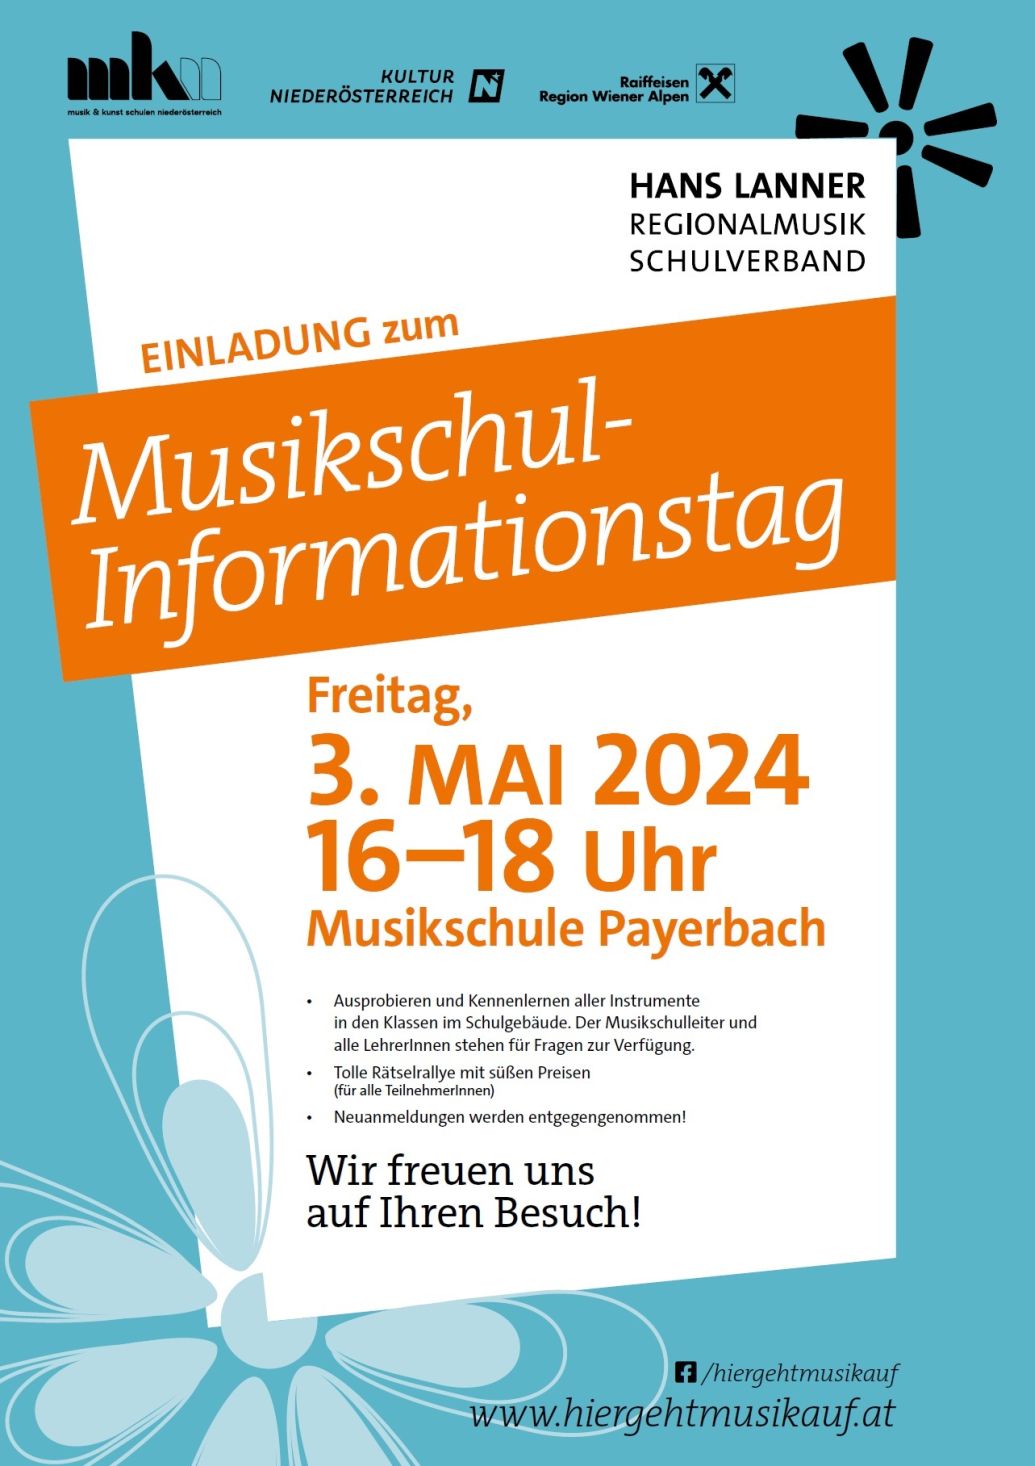 Foto zur Veranstaltung Musikschul-Informationstag in der Musikschule Payerbach
